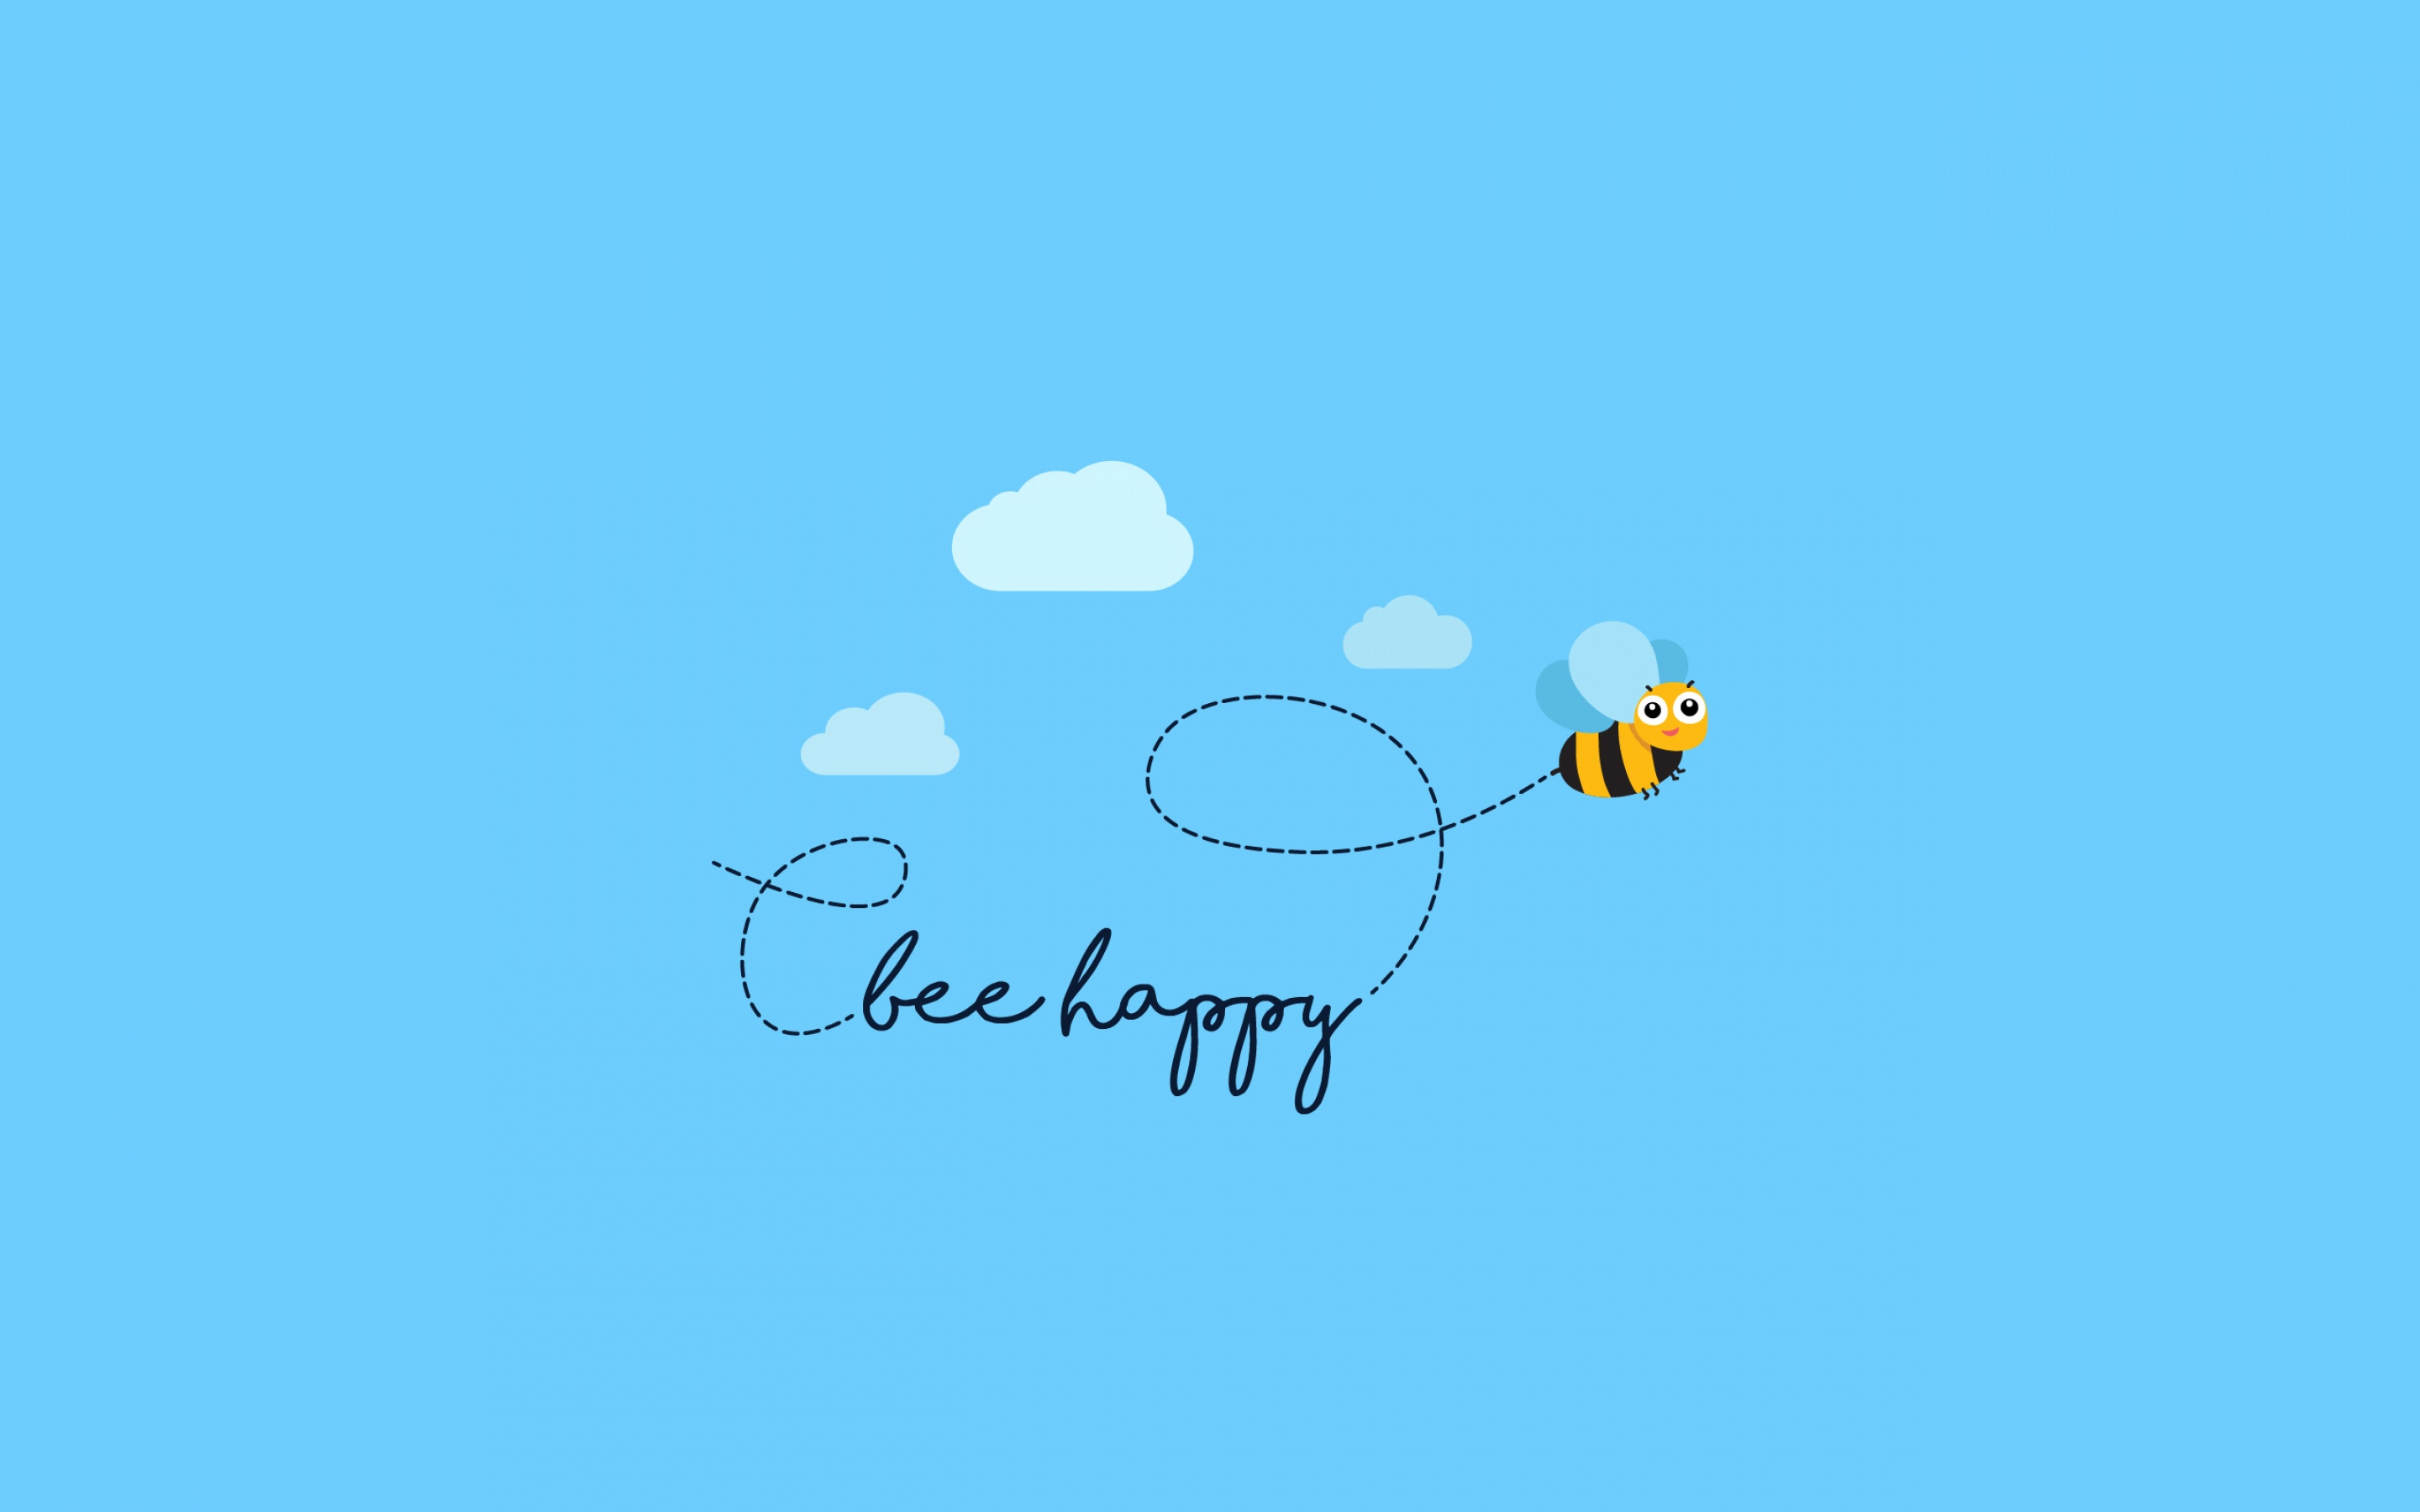 Bee happy Wallpaper. 